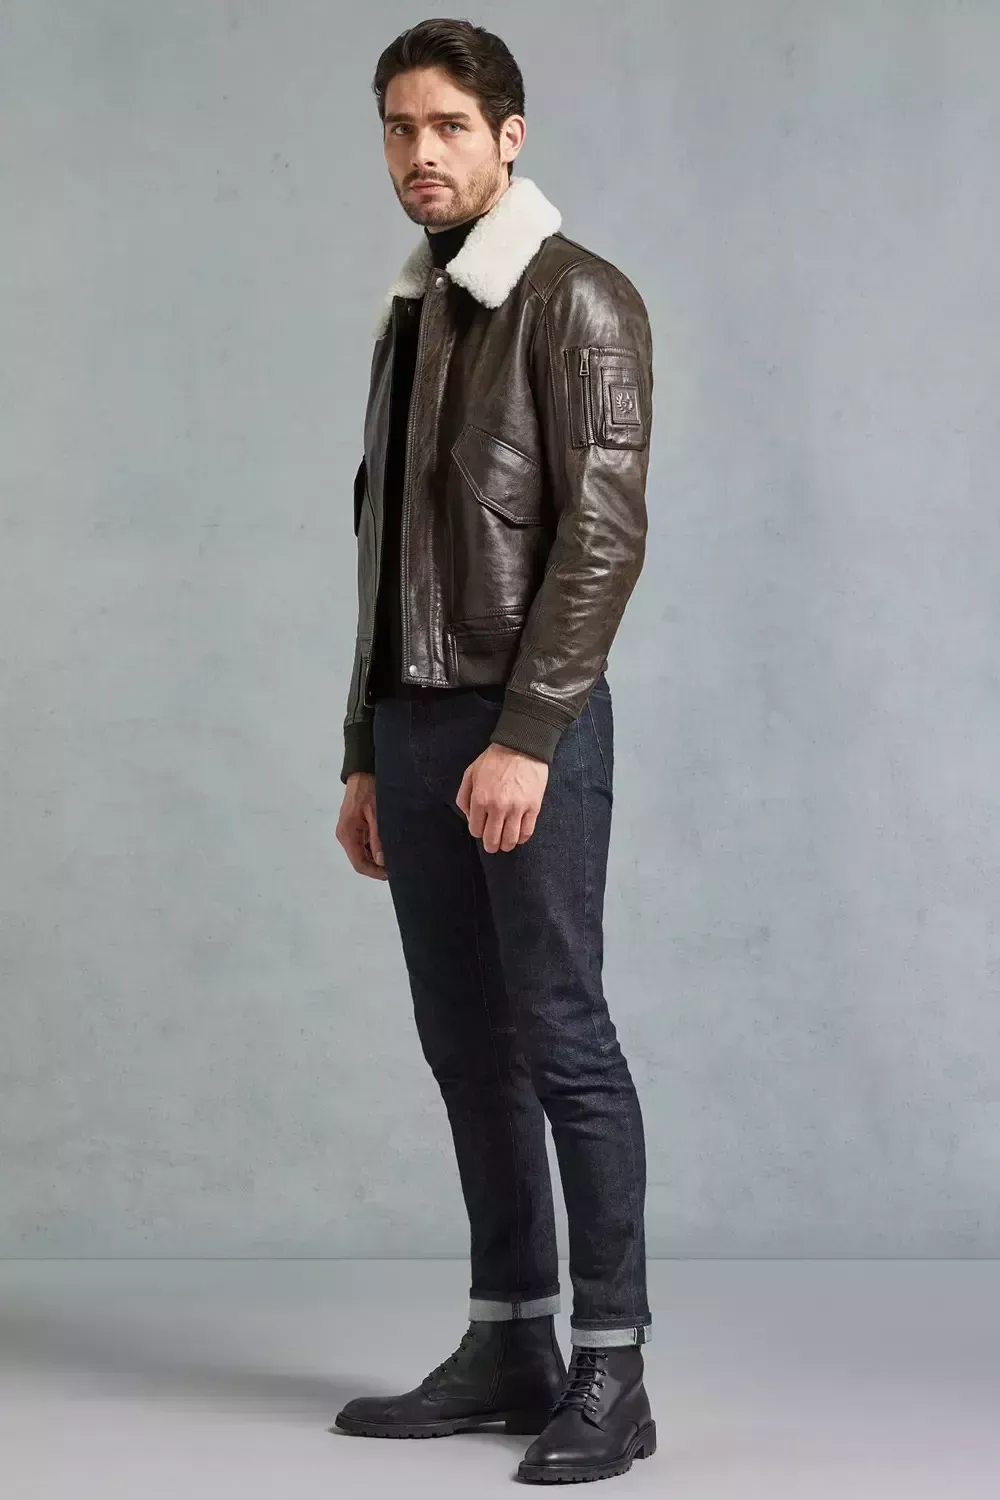 Cómo llevar una chaqueta de cuero: 5 conjuntos elegantes y modernos para hombres